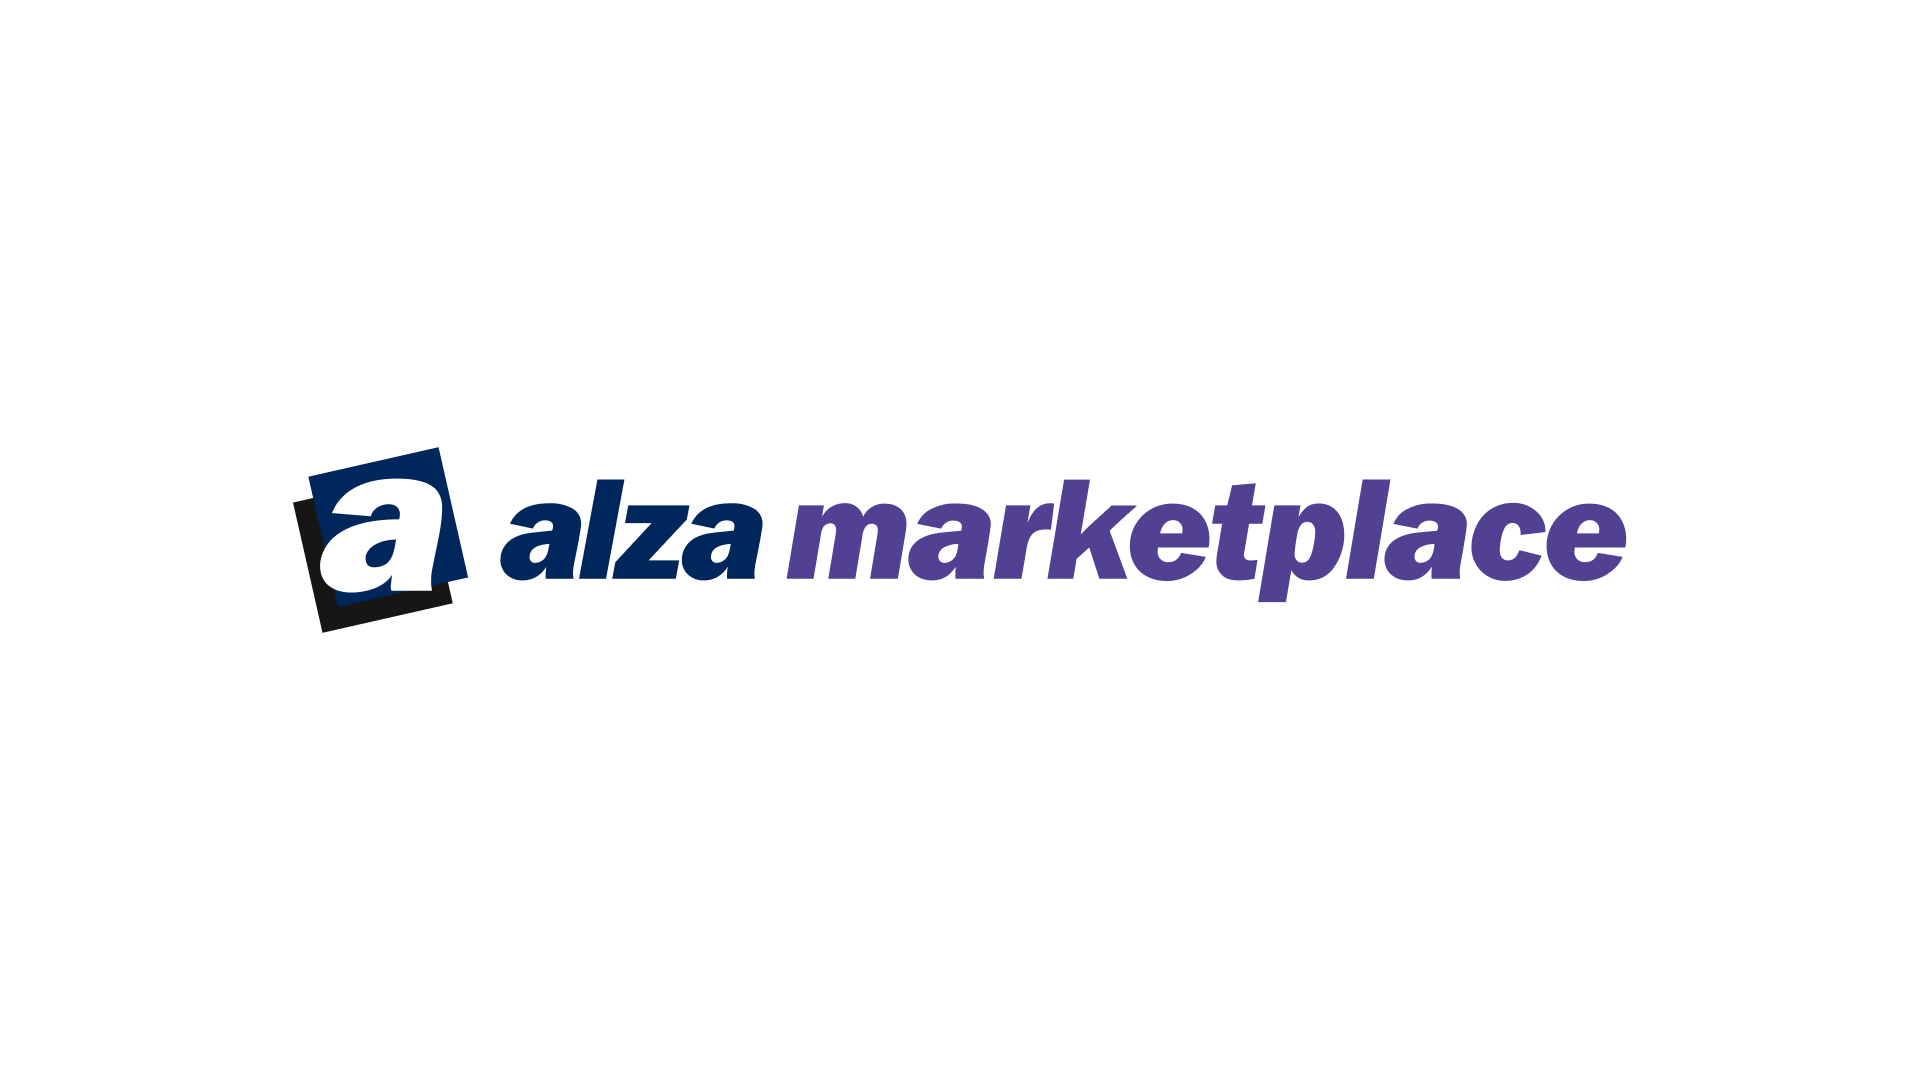 marketplaces_alza-marketplace_1920x1080